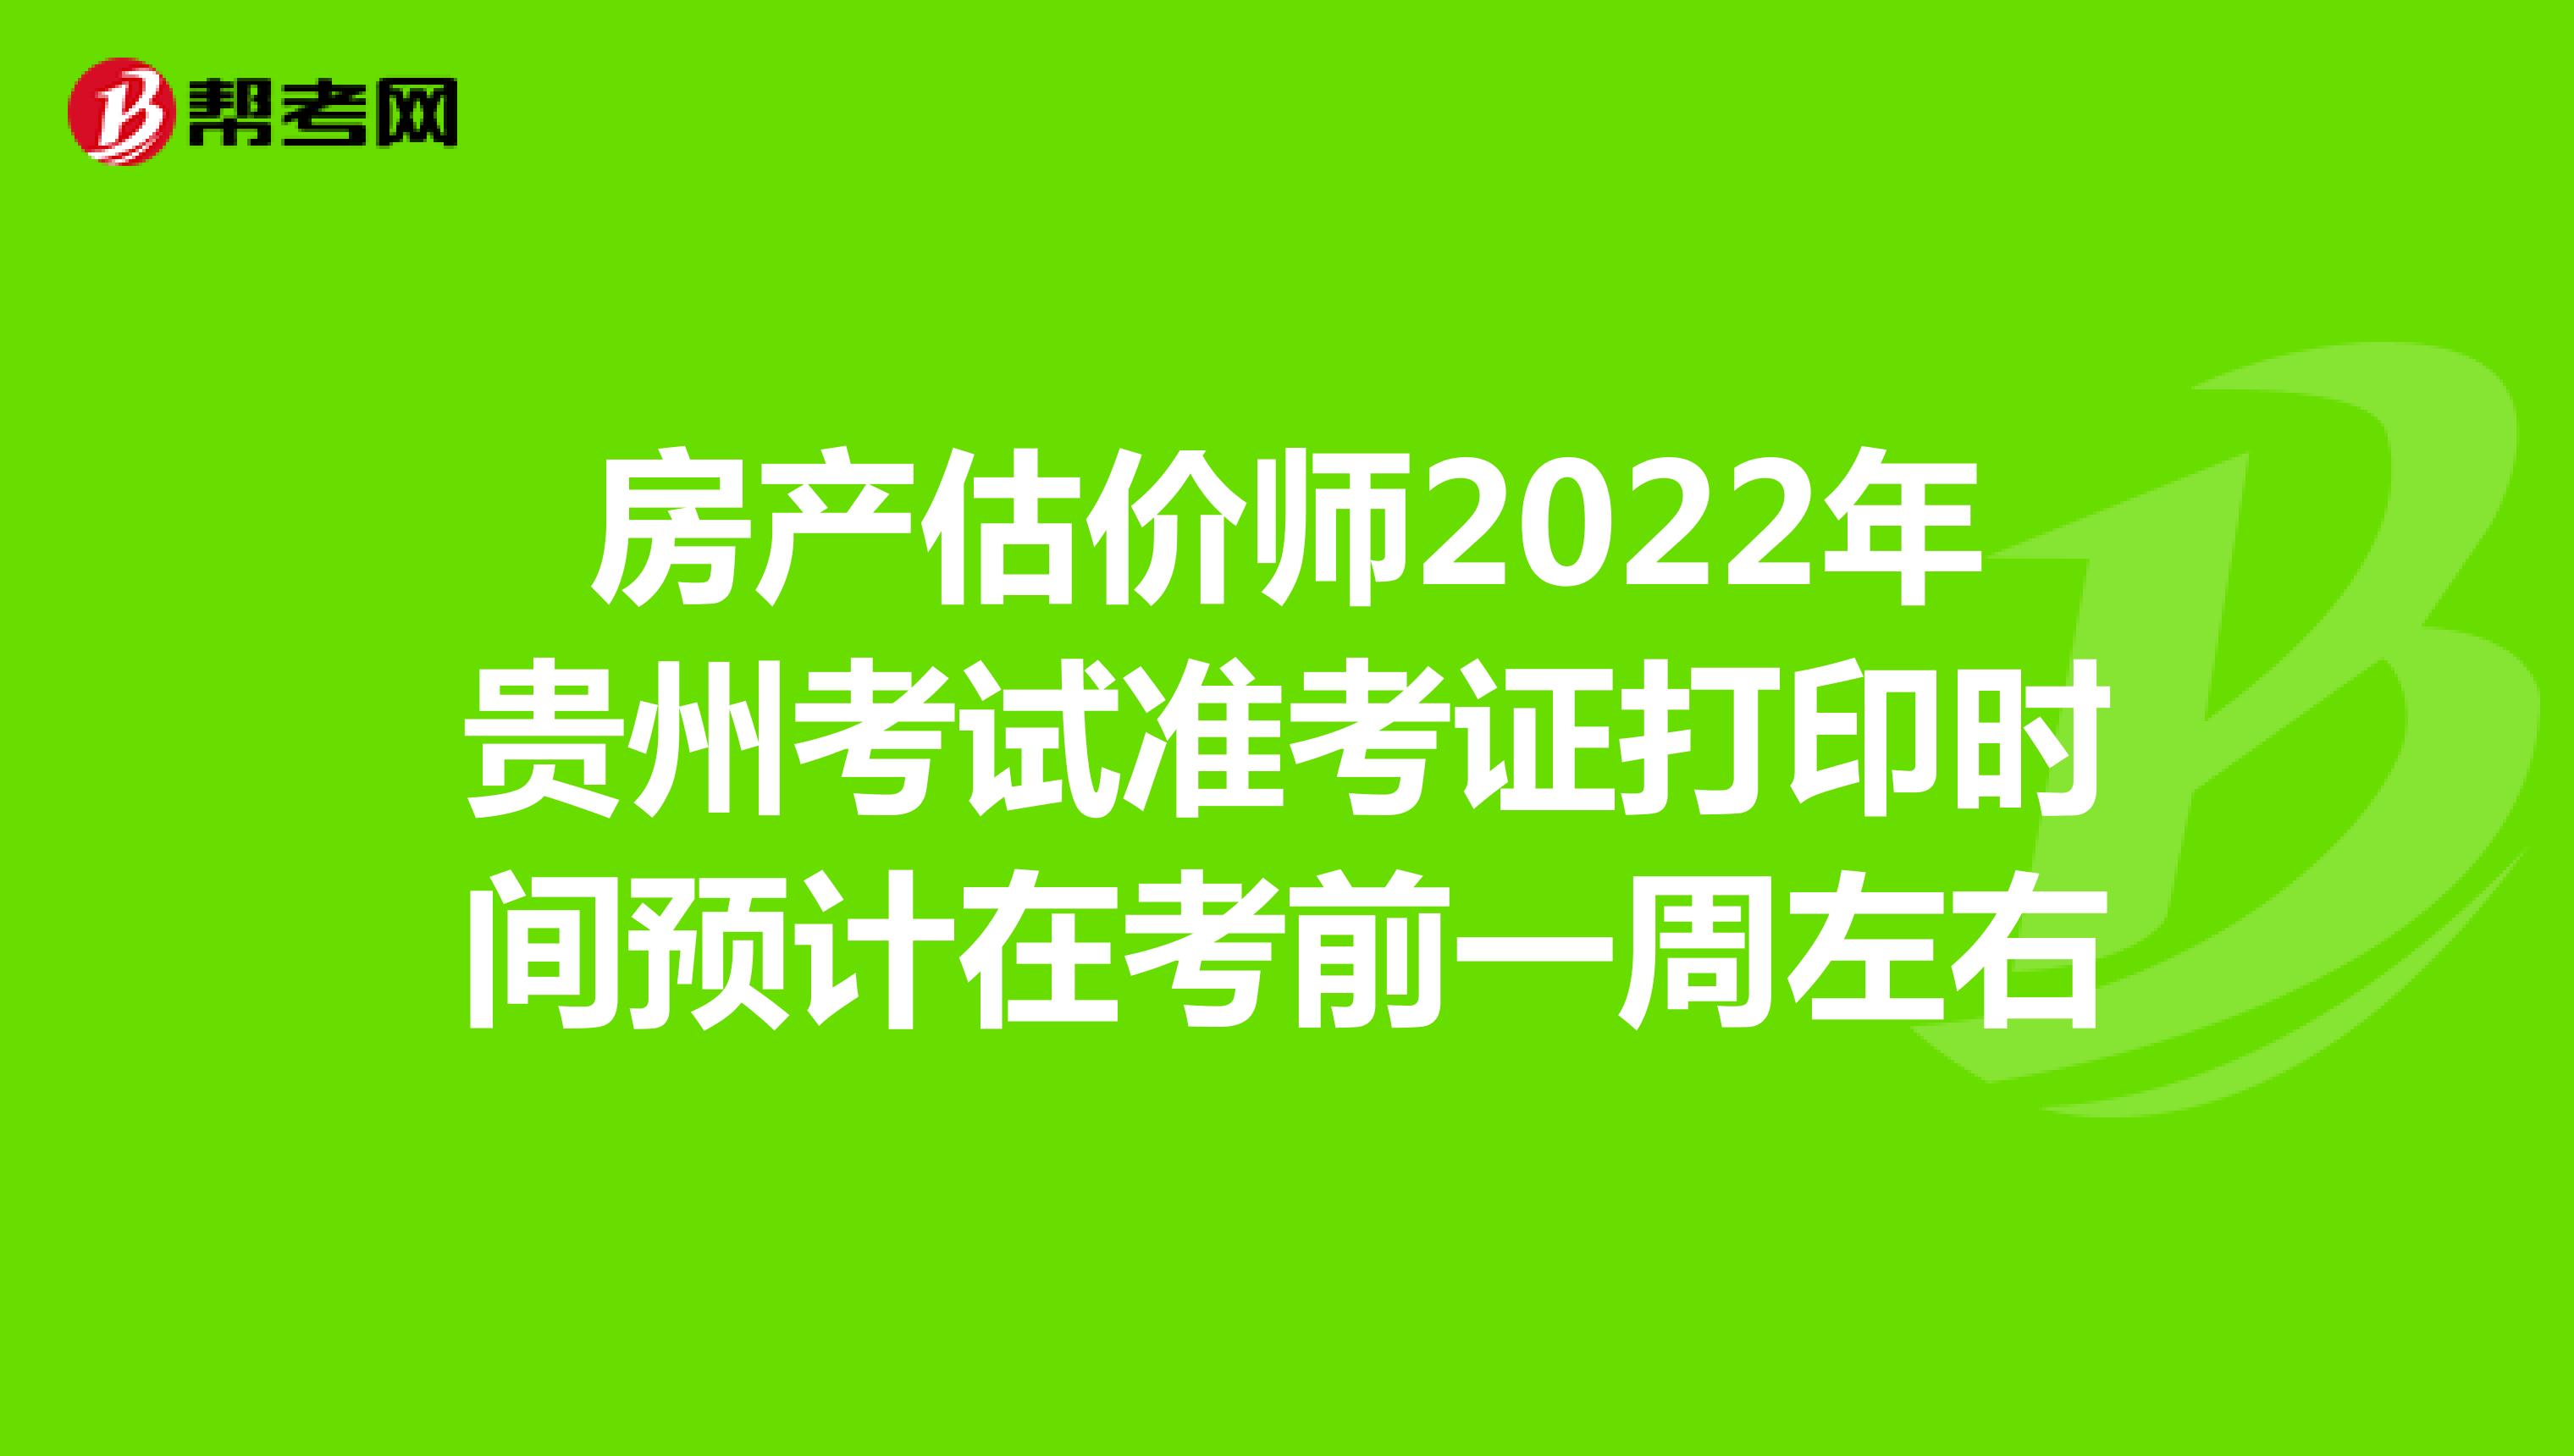 房产估价师2022年贵州考试准考证打印时间预计在考前一周左右